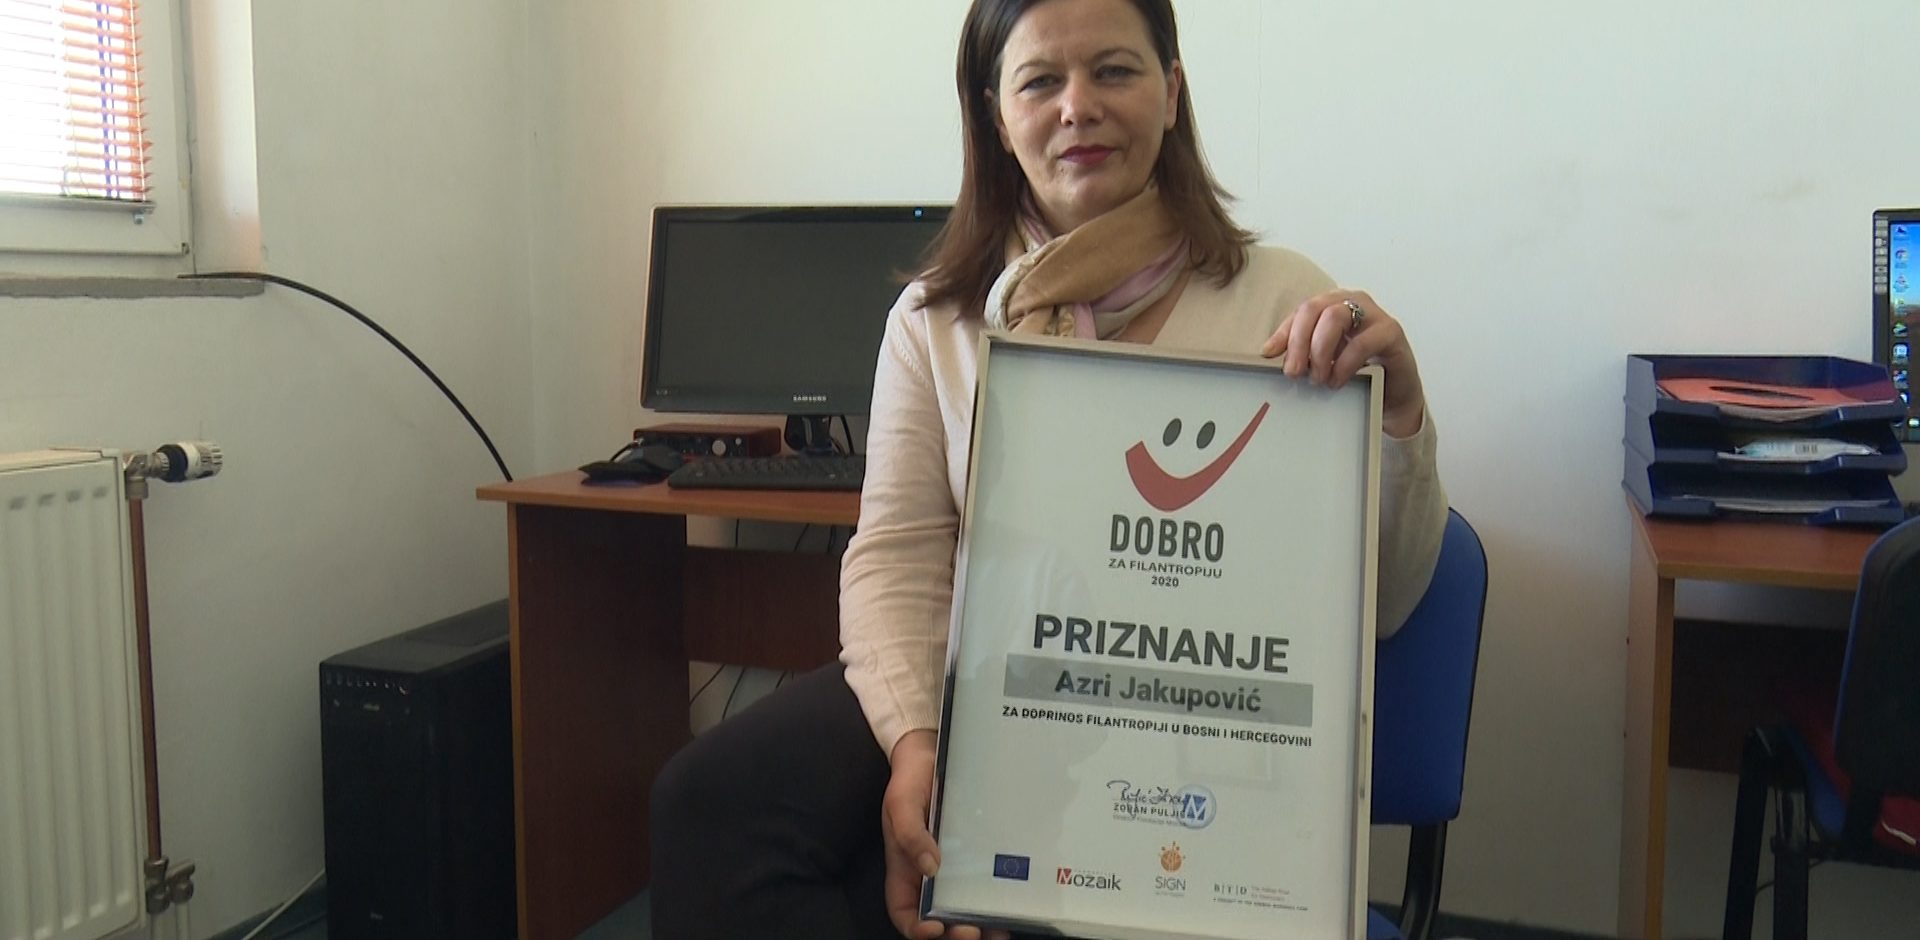 Azra Jakupović dobitnica priznanja  “Dobro” za filantropiju